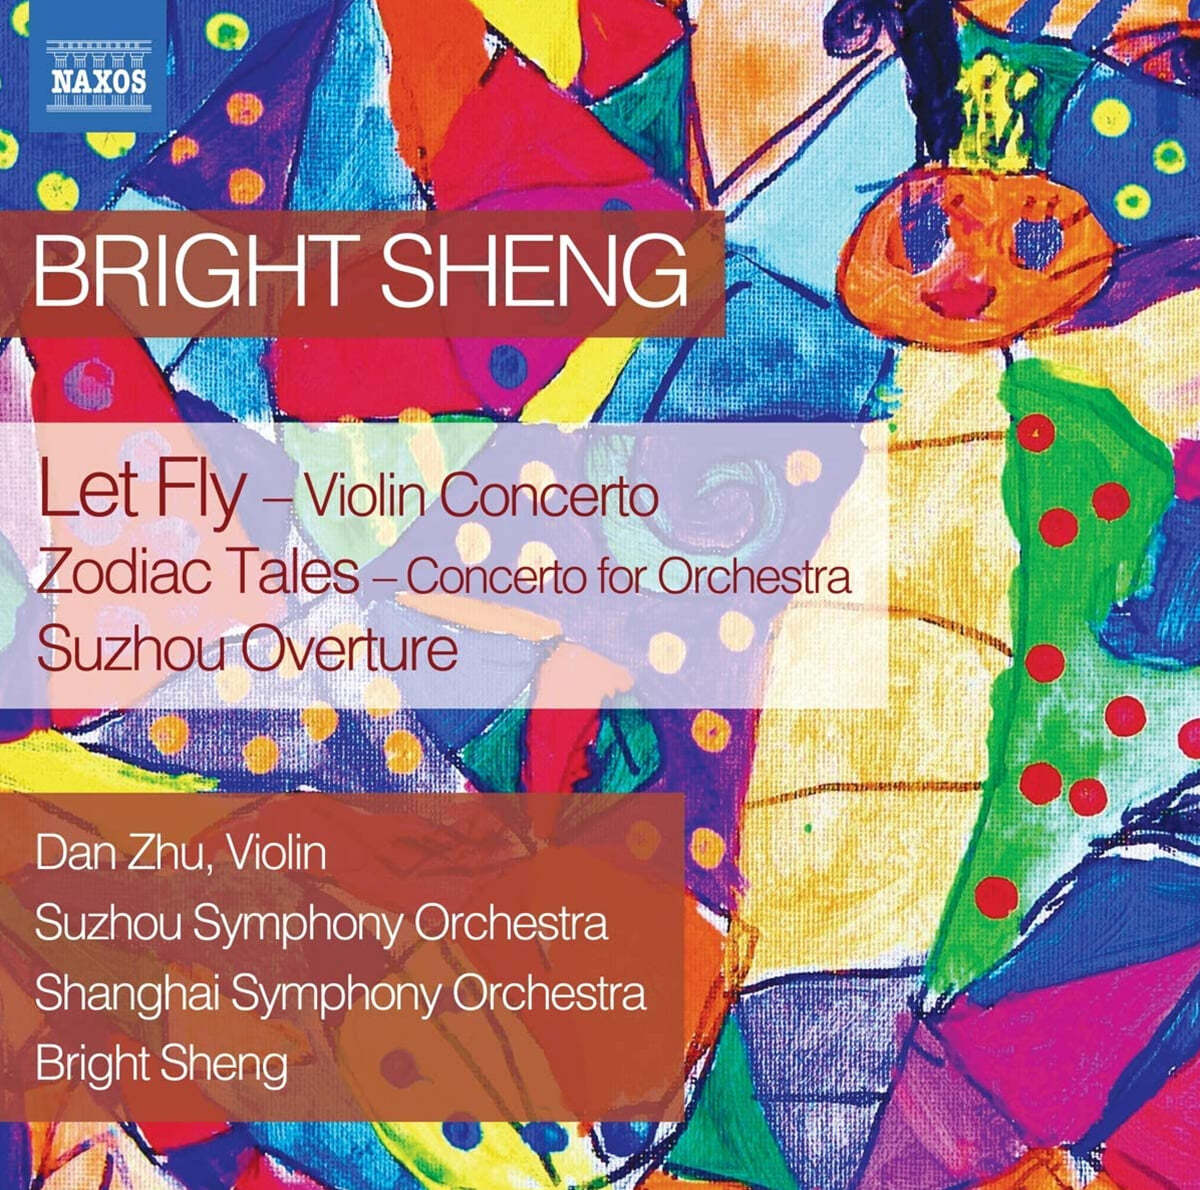 Dan Zhu 브라이트 셩: 바이올린 협주곡 &#39;날게 하라&#39;, 십이간지 이야기, 쑤저우 서곡 (Bright Sheng: Violin Concerto &#39;Let Fly&#39;, Zodiac Tales, Suzhou Overture) 